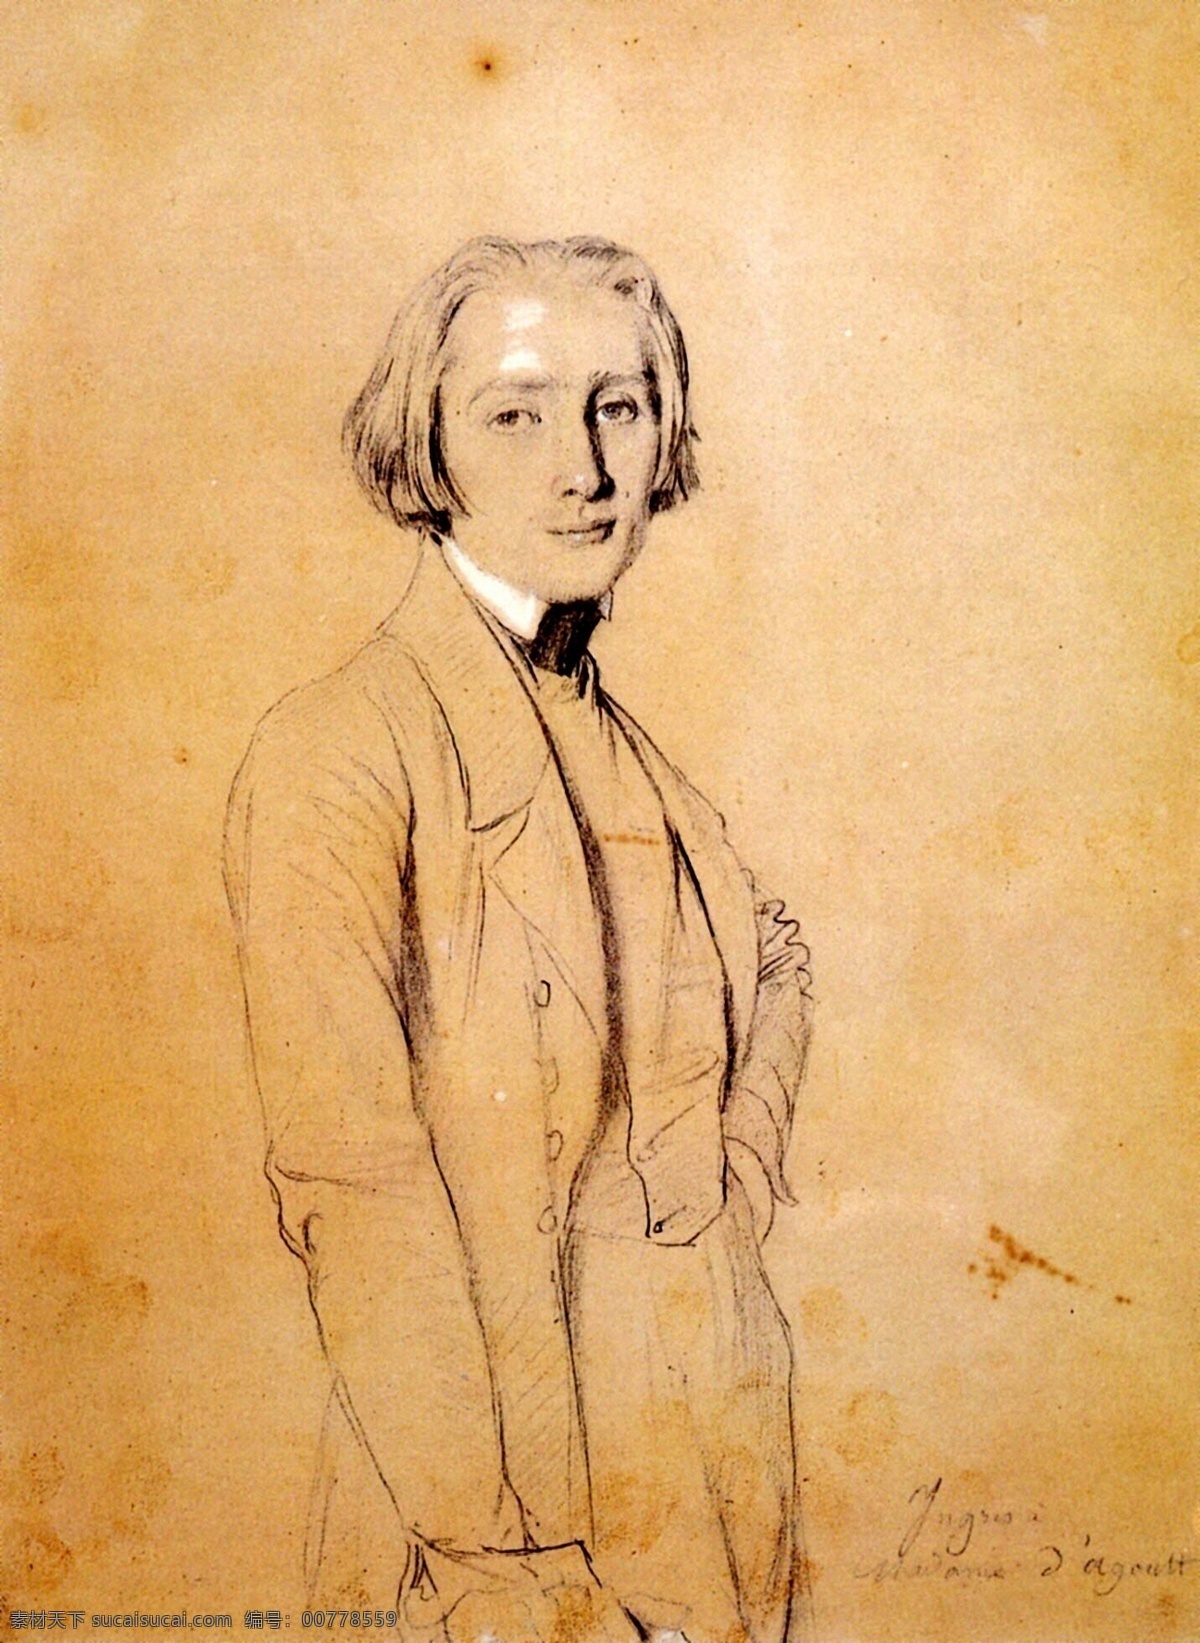 安格尔素描画 欧洲 人物画 设计素材 人物肖像 素描速写 书画美术 黄色